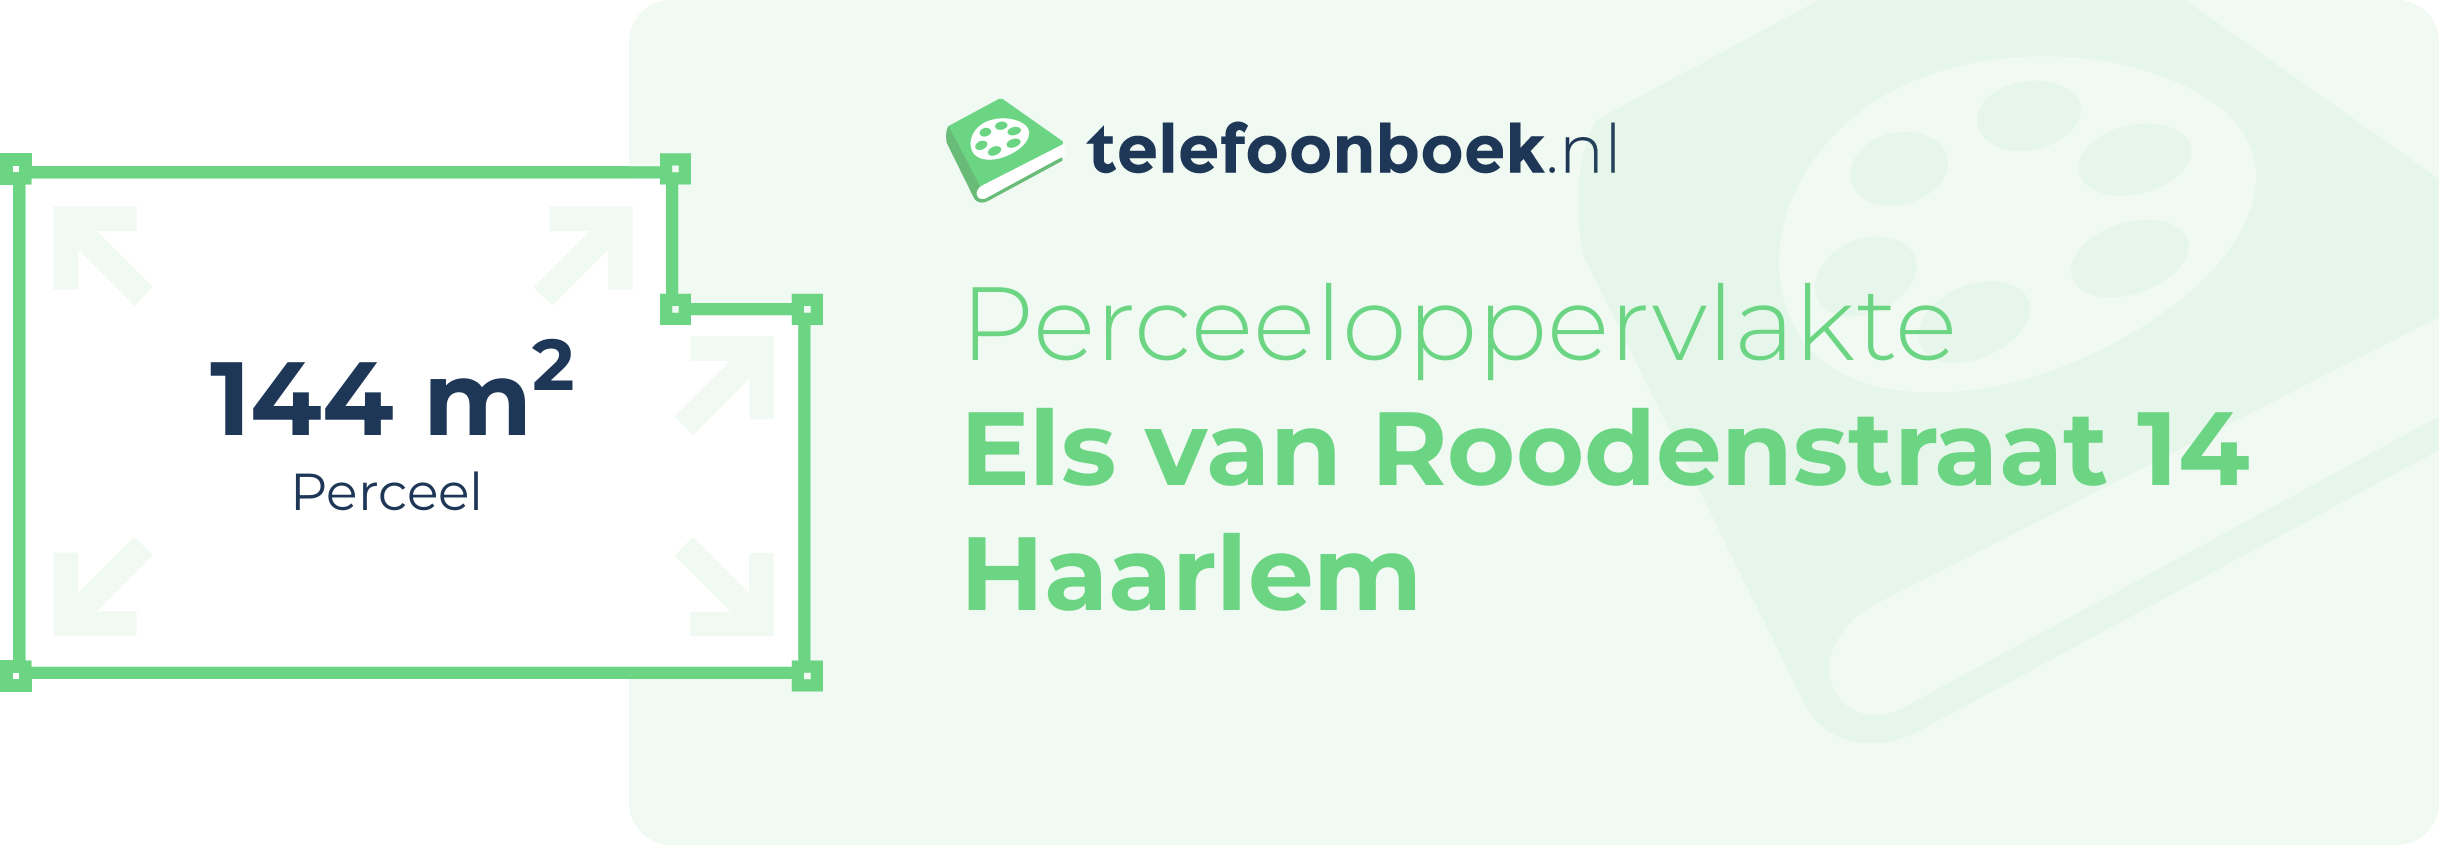 Perceeloppervlakte Els Van Roodenstraat 14 Haarlem